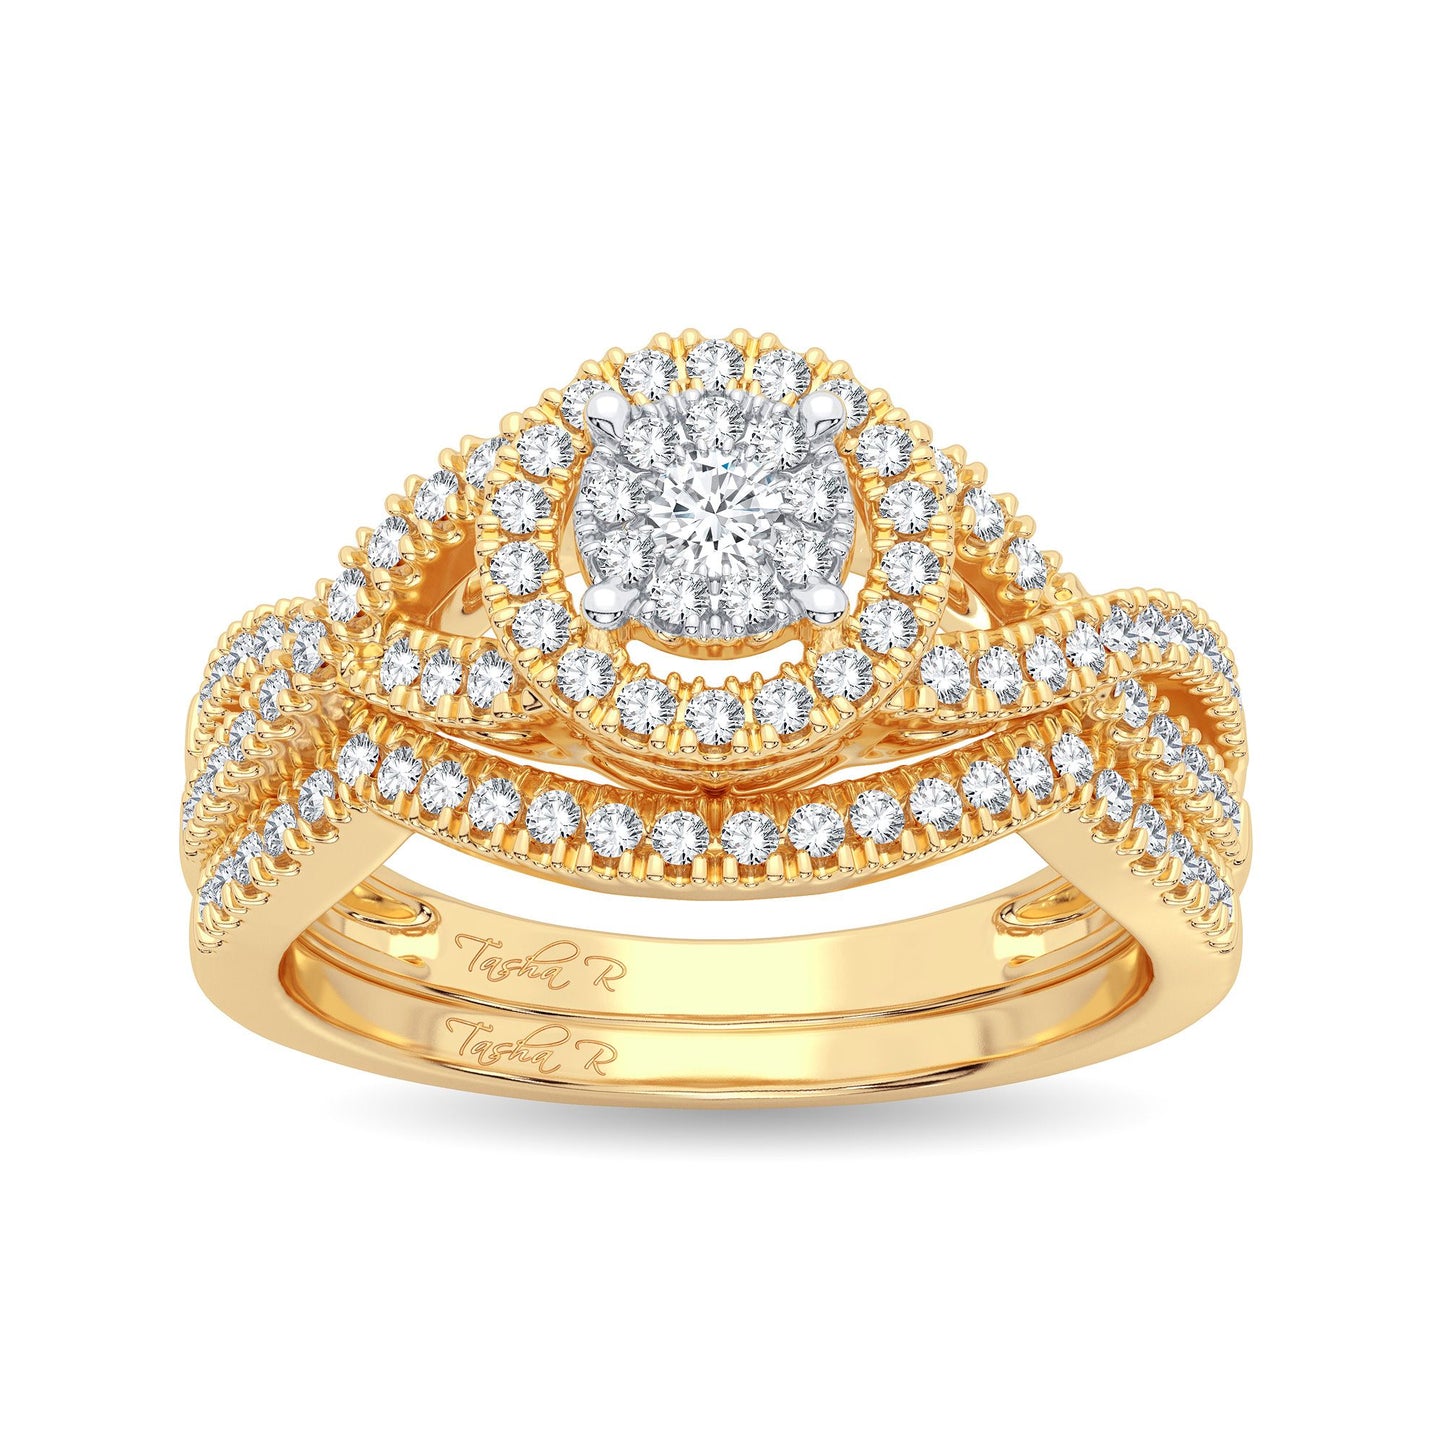 Serenata Sunburst - Conjunto nupcial de oro amarillo de 14 quilates con diamantes redondos de 0,50 quilates